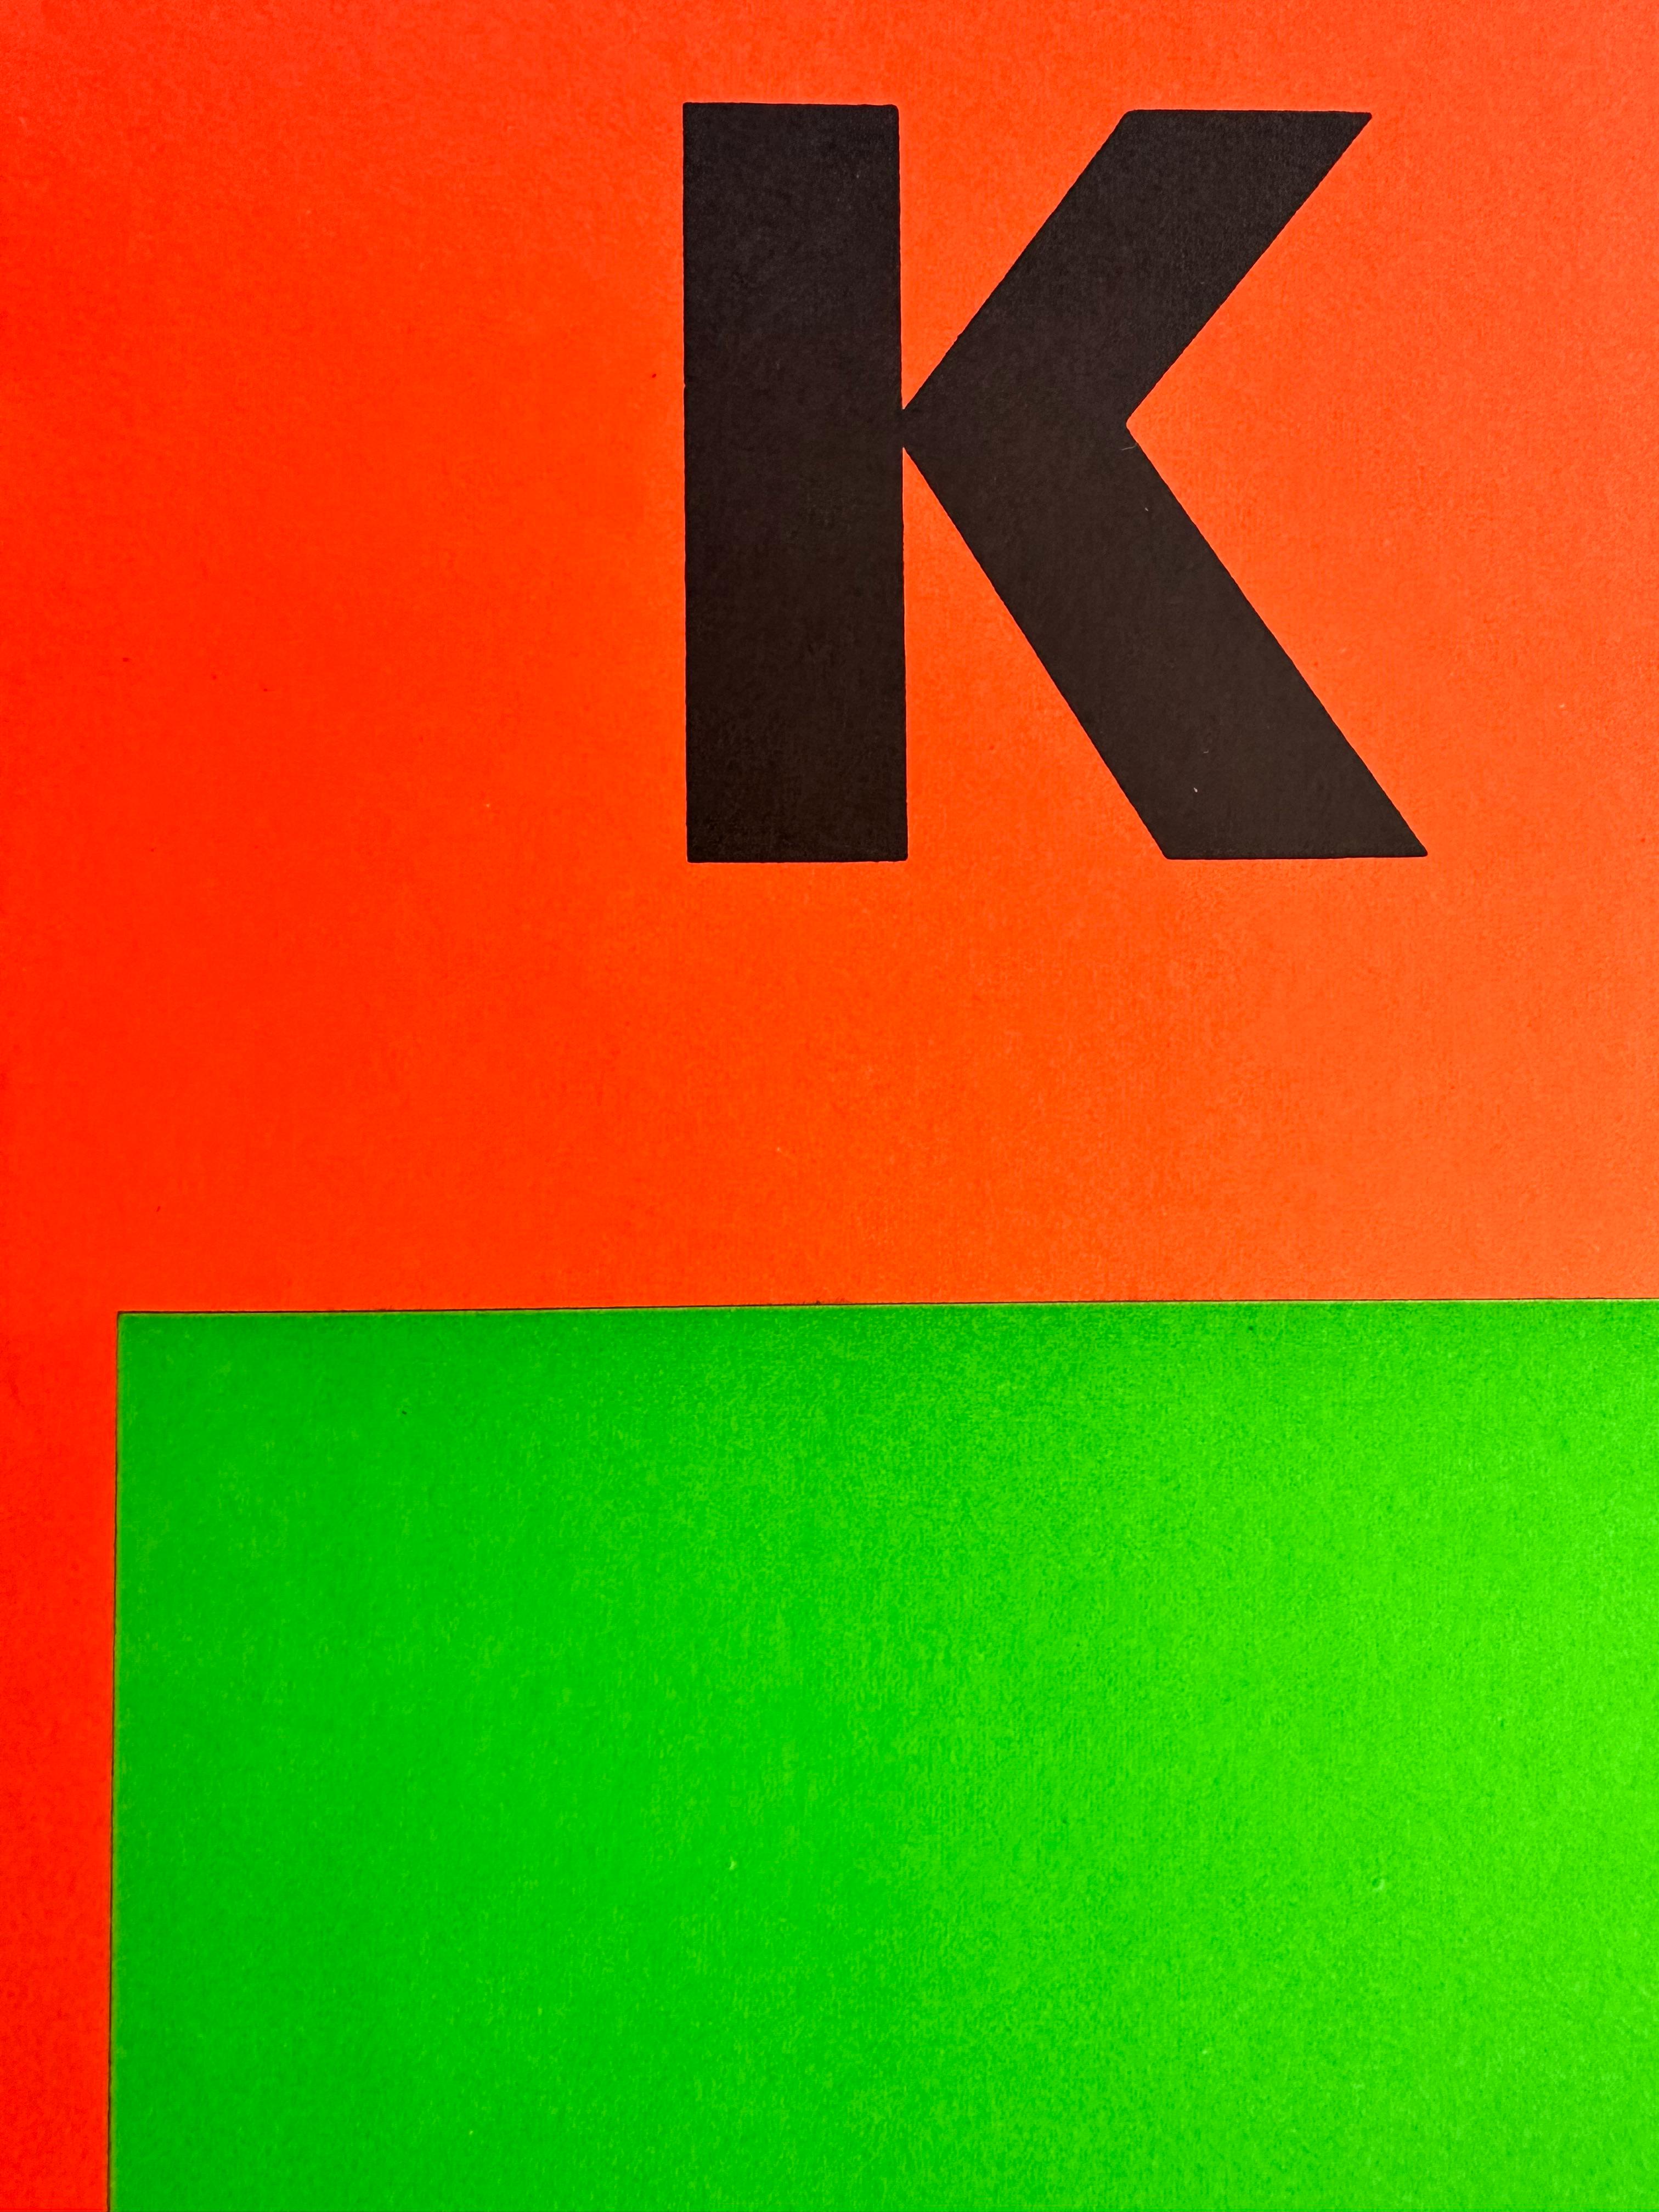 Original-Ausstellungsplakat von Ellsworth Kelly, 1964. Gallerie Maeght. 26 x 20 Zoll. Lithographie auf Papier. 

Leichte Knitterspuren unten links. Einige Abnutzungserscheinungen am Papierrand oben links. Sehr sauber, keine Flecken oder Verblassen.